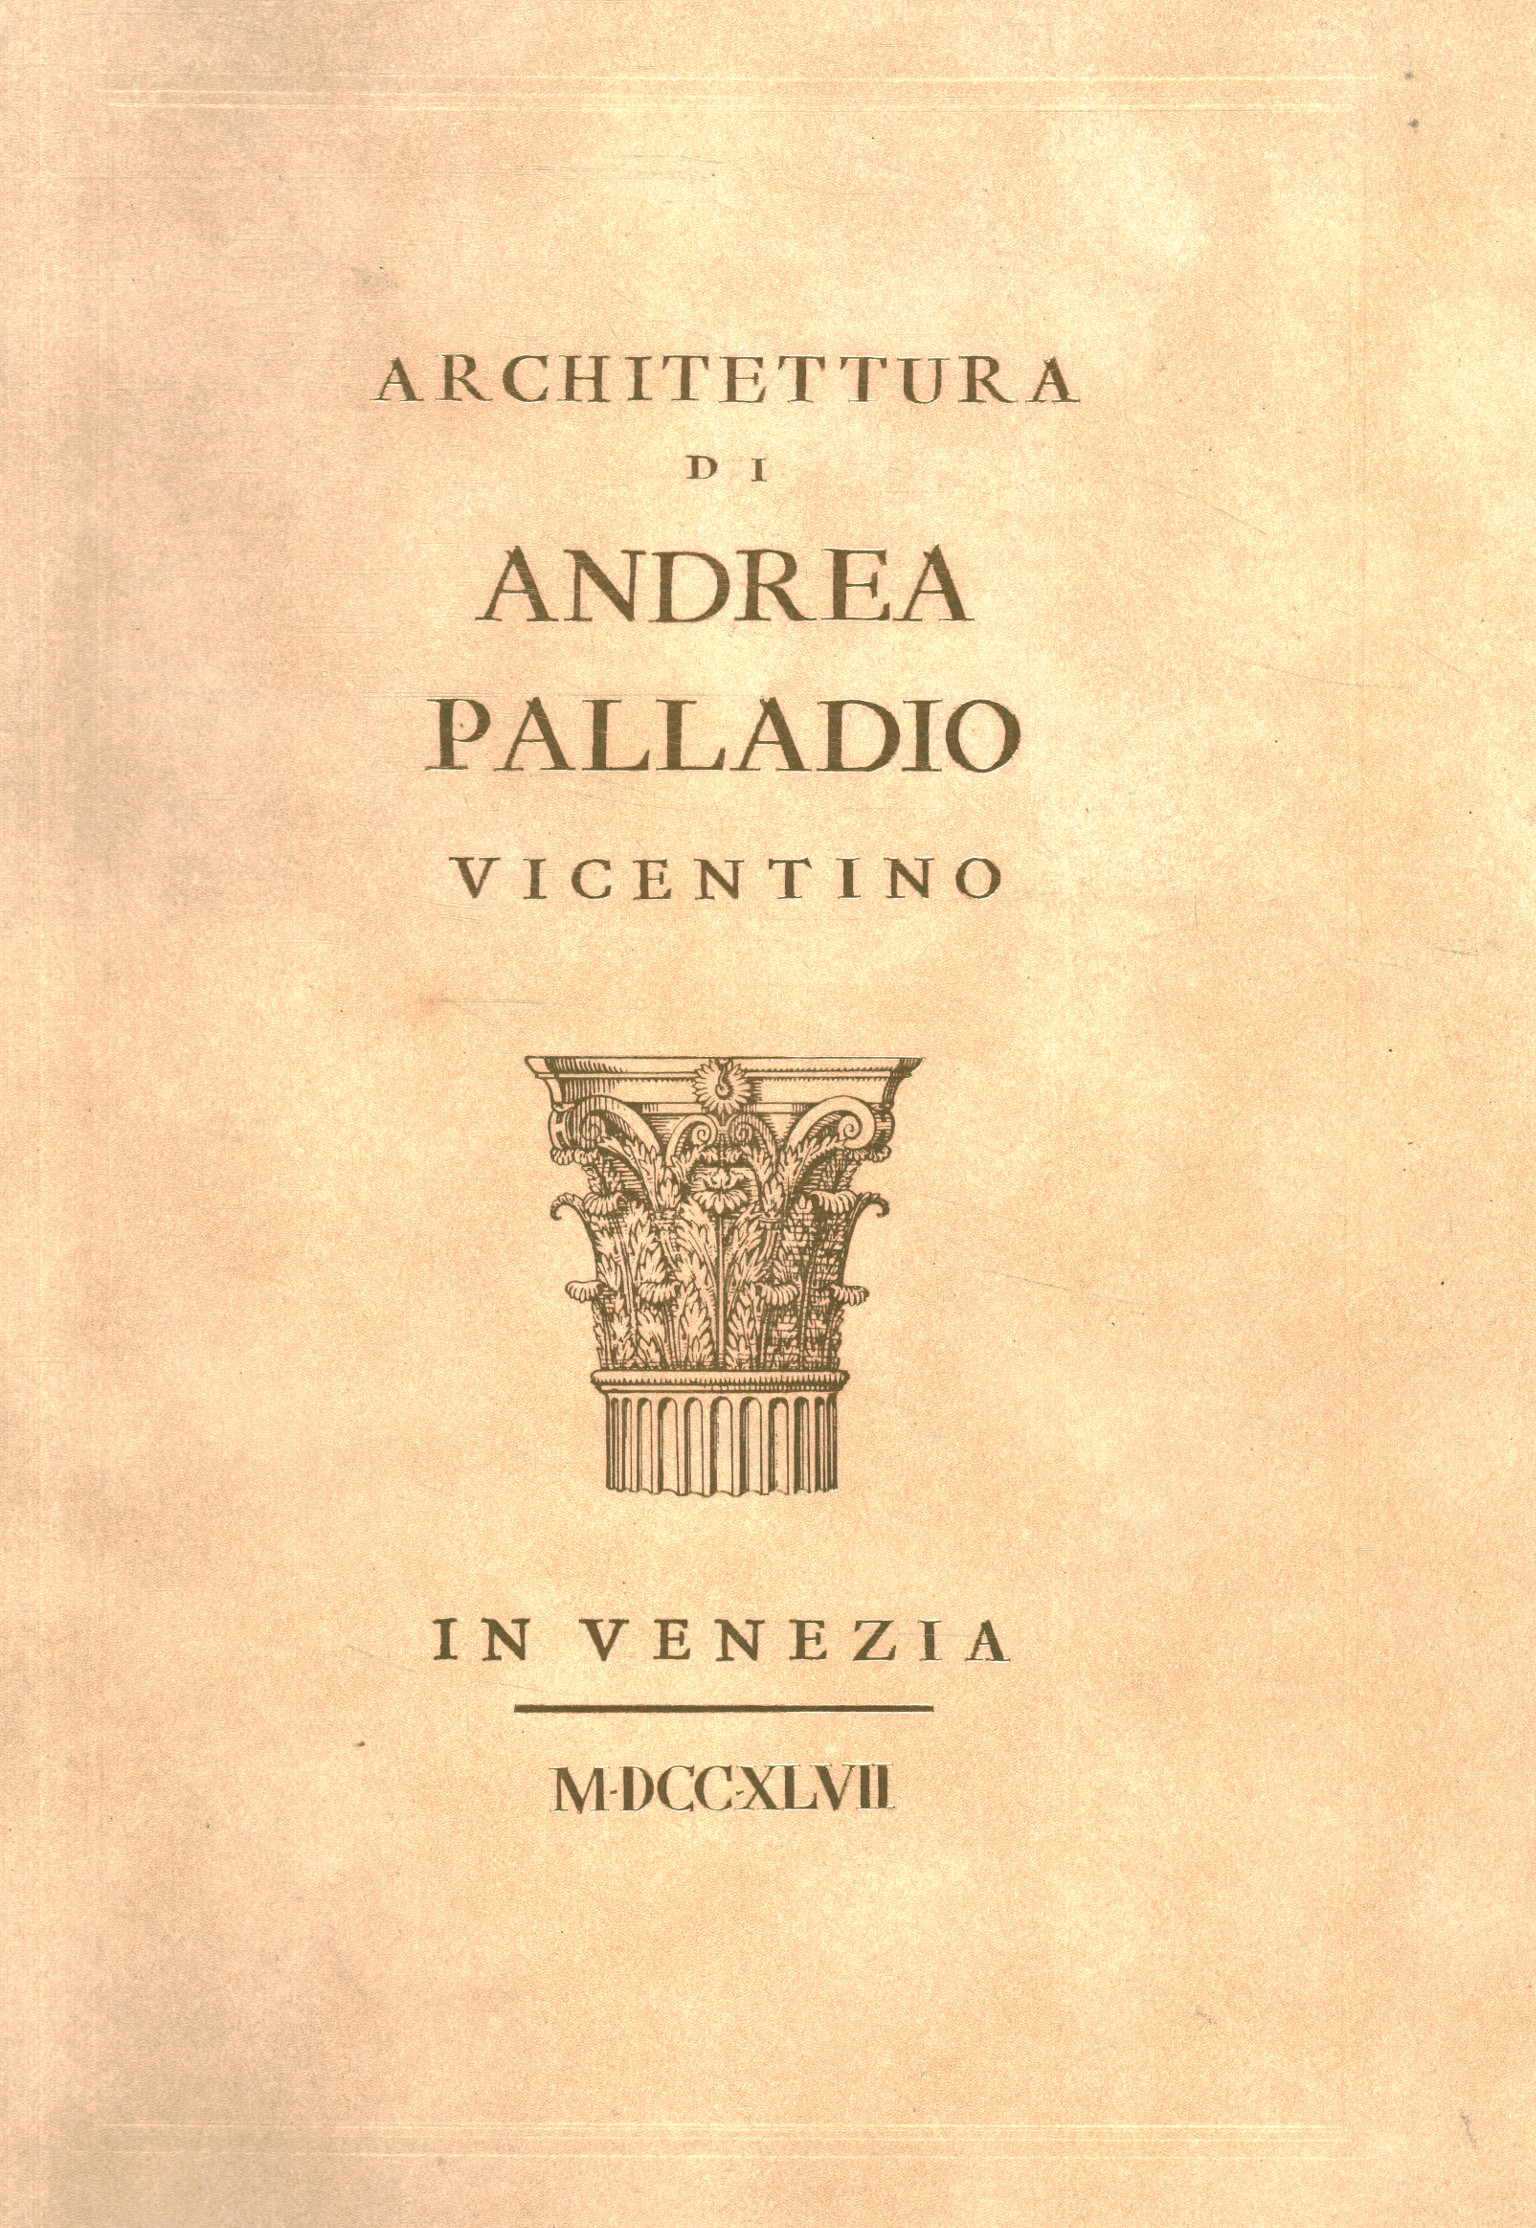 Architettura di Andrea Palladio vicentino%,Architettura di Andrea Palladio vicentino%,Architettura di Andrea Palladio vicentino%